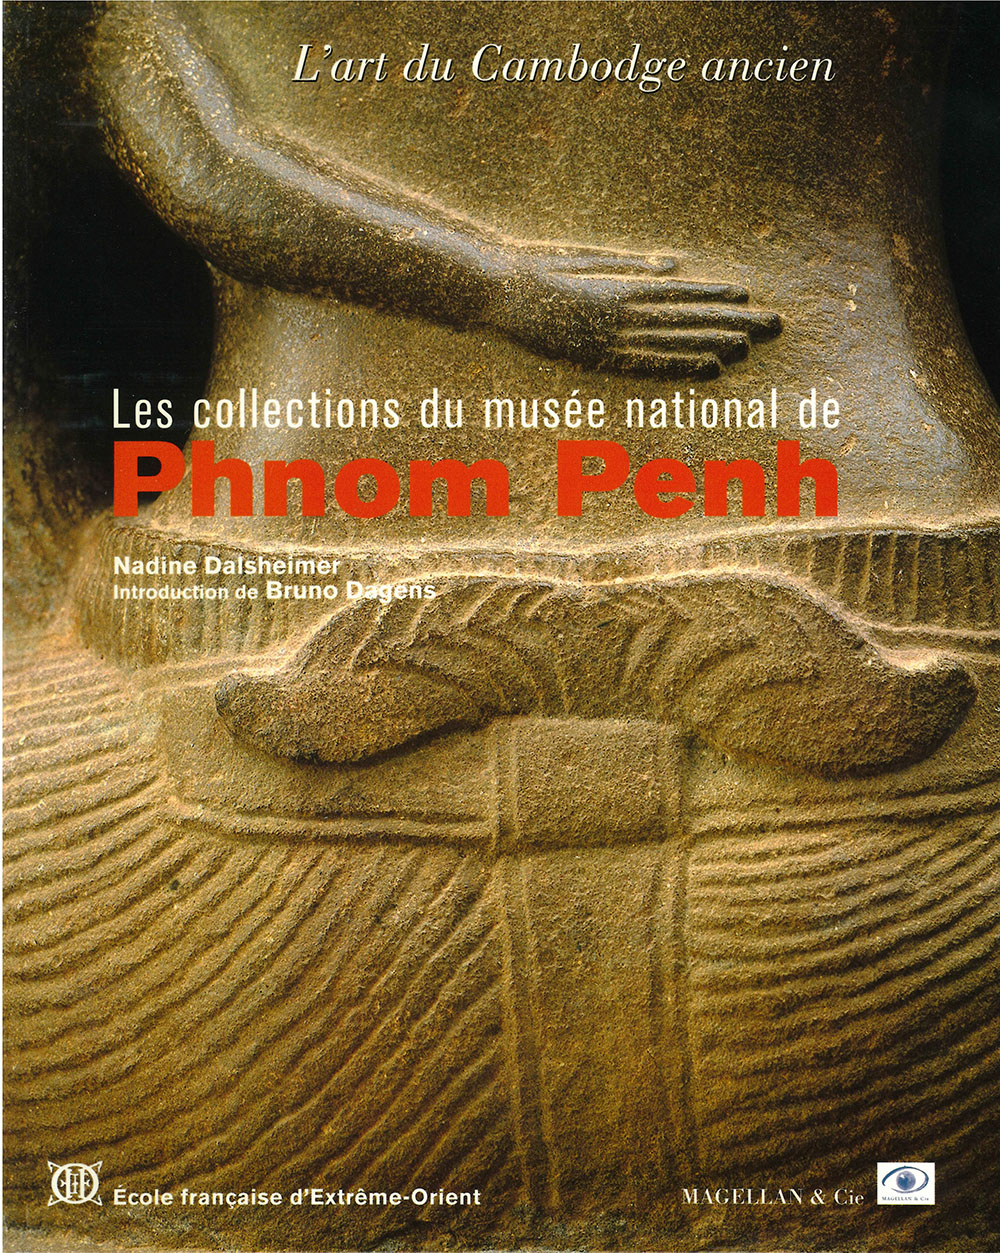 Les collections du musée national de Phnom Penh : L'art du Cambodge ancien